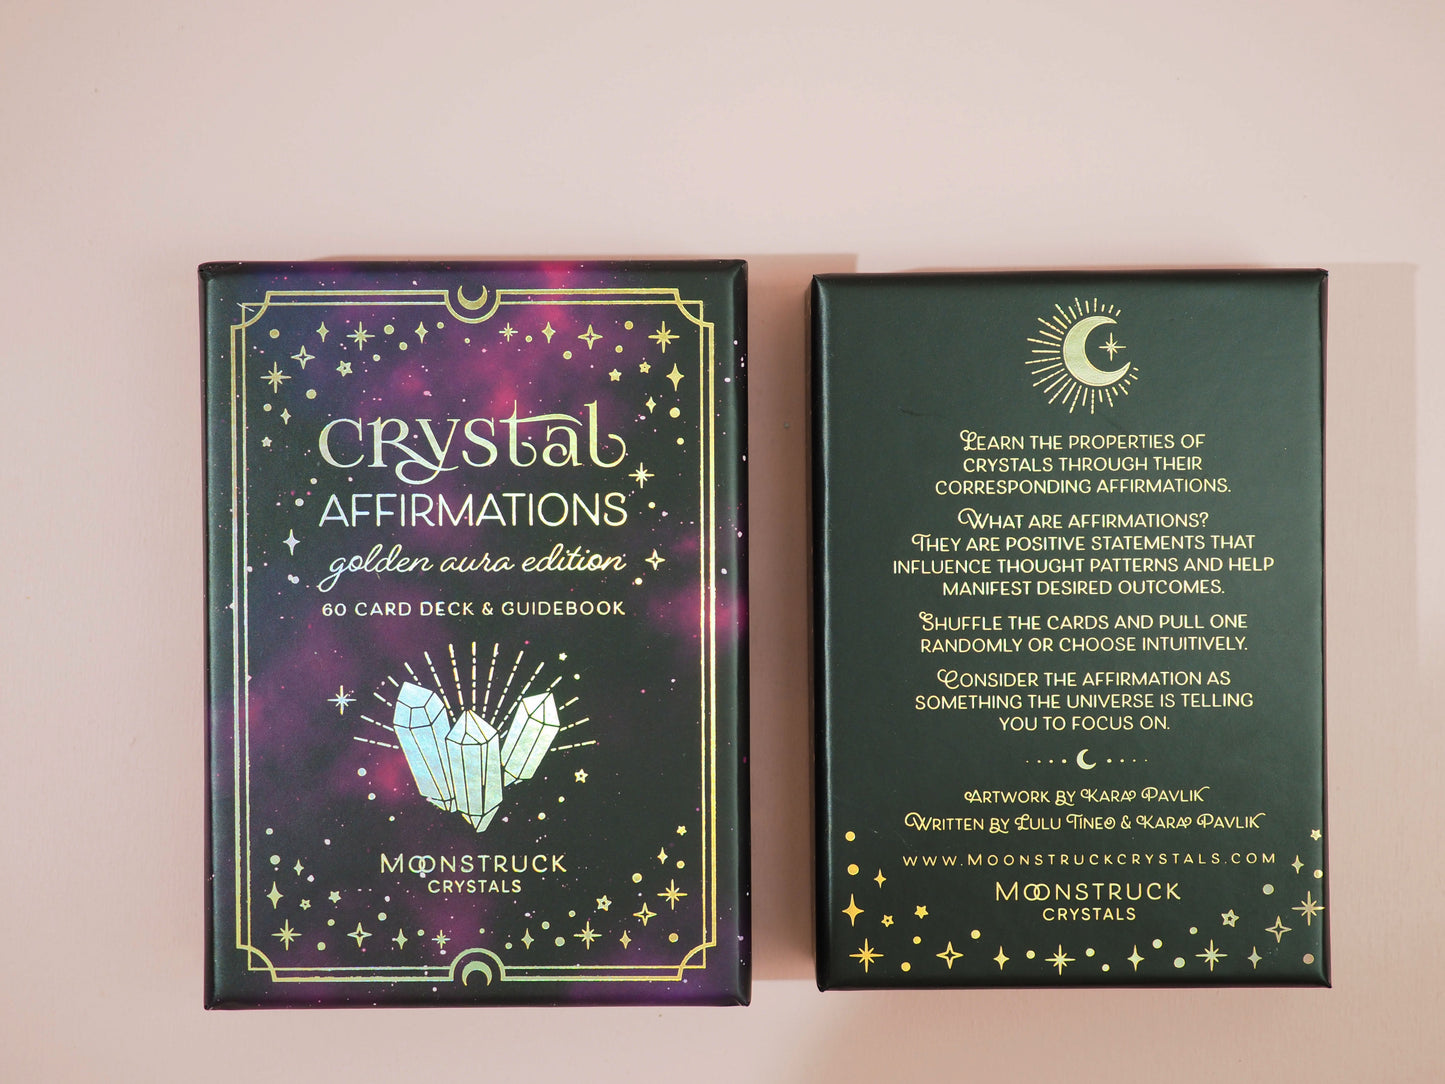 Crystal Affirmations . Golden Aura Edition von Moonstruck Crystals / Karten Deck mit Kristall Affirmationen